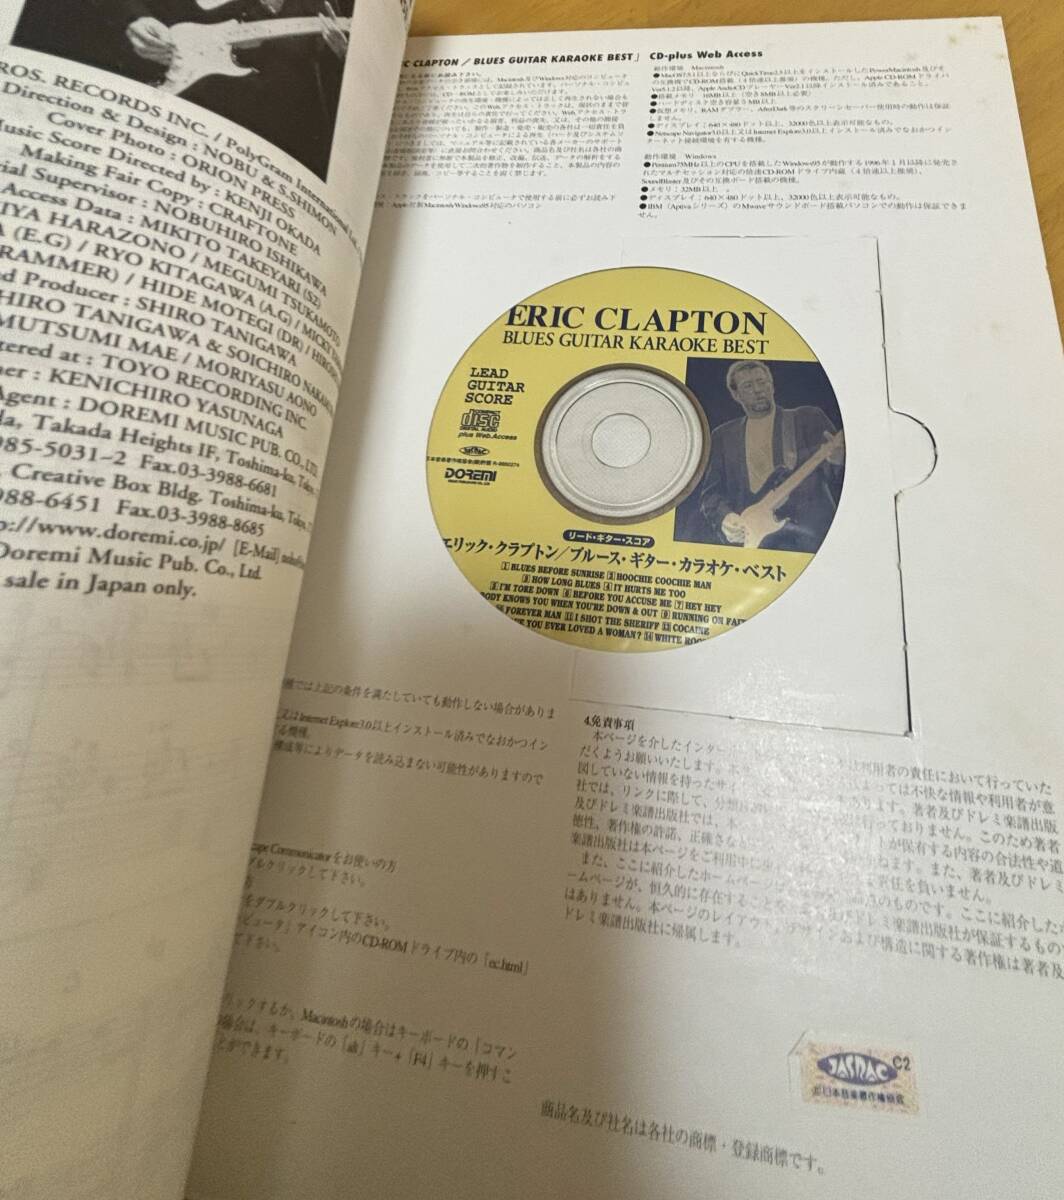 エリッククラプトン/ブルース・ギター・カラオケ・ベスト Eric Clapton/Blues Guitar Karaoke Best CD付 の画像4